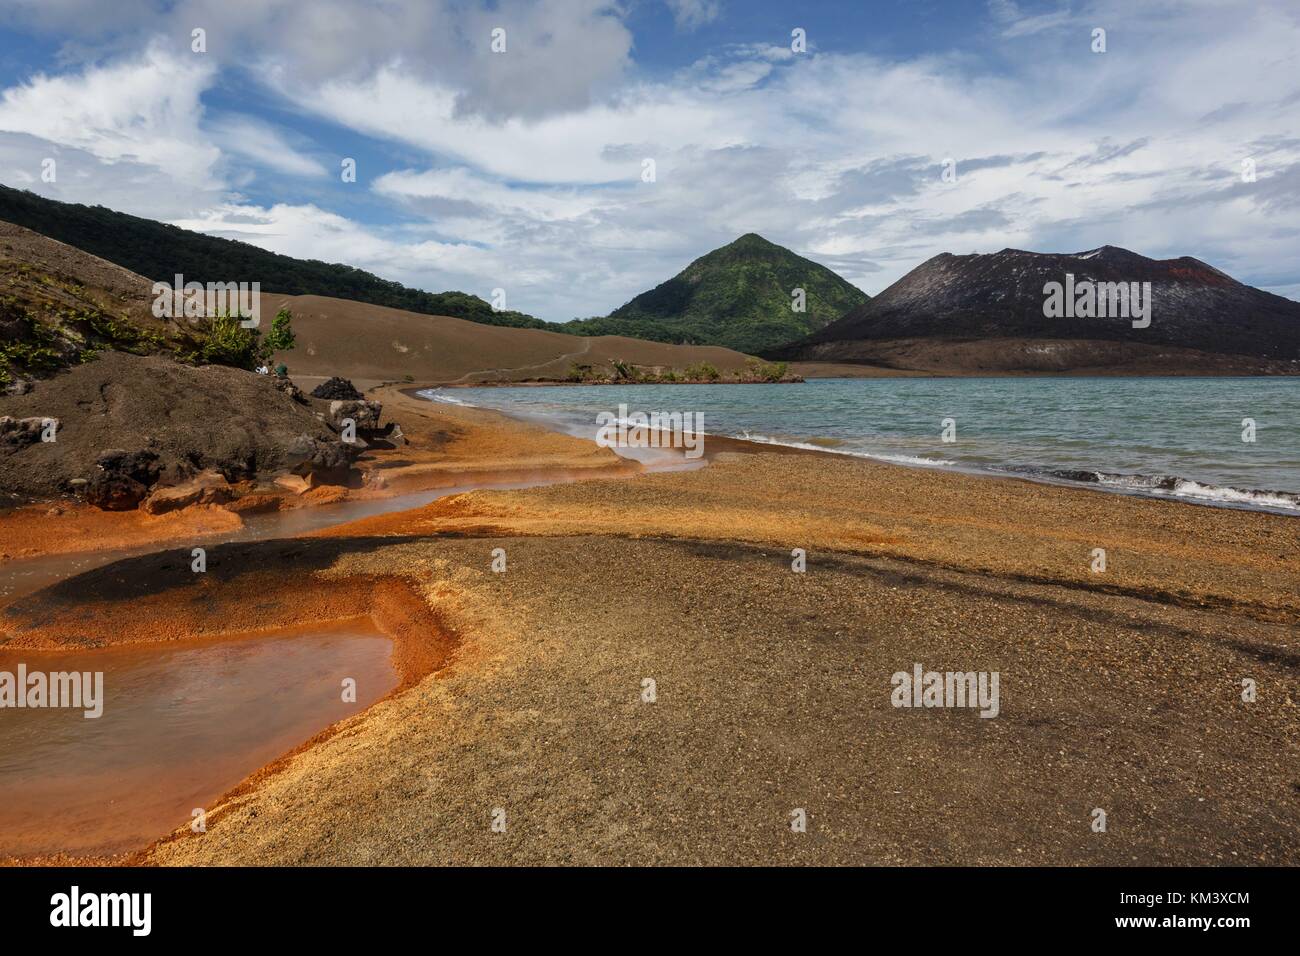 Residuos de naranja brillante reside en torno al manantial de agua caliente, al pie del volcán Tavurvur Foto de stock